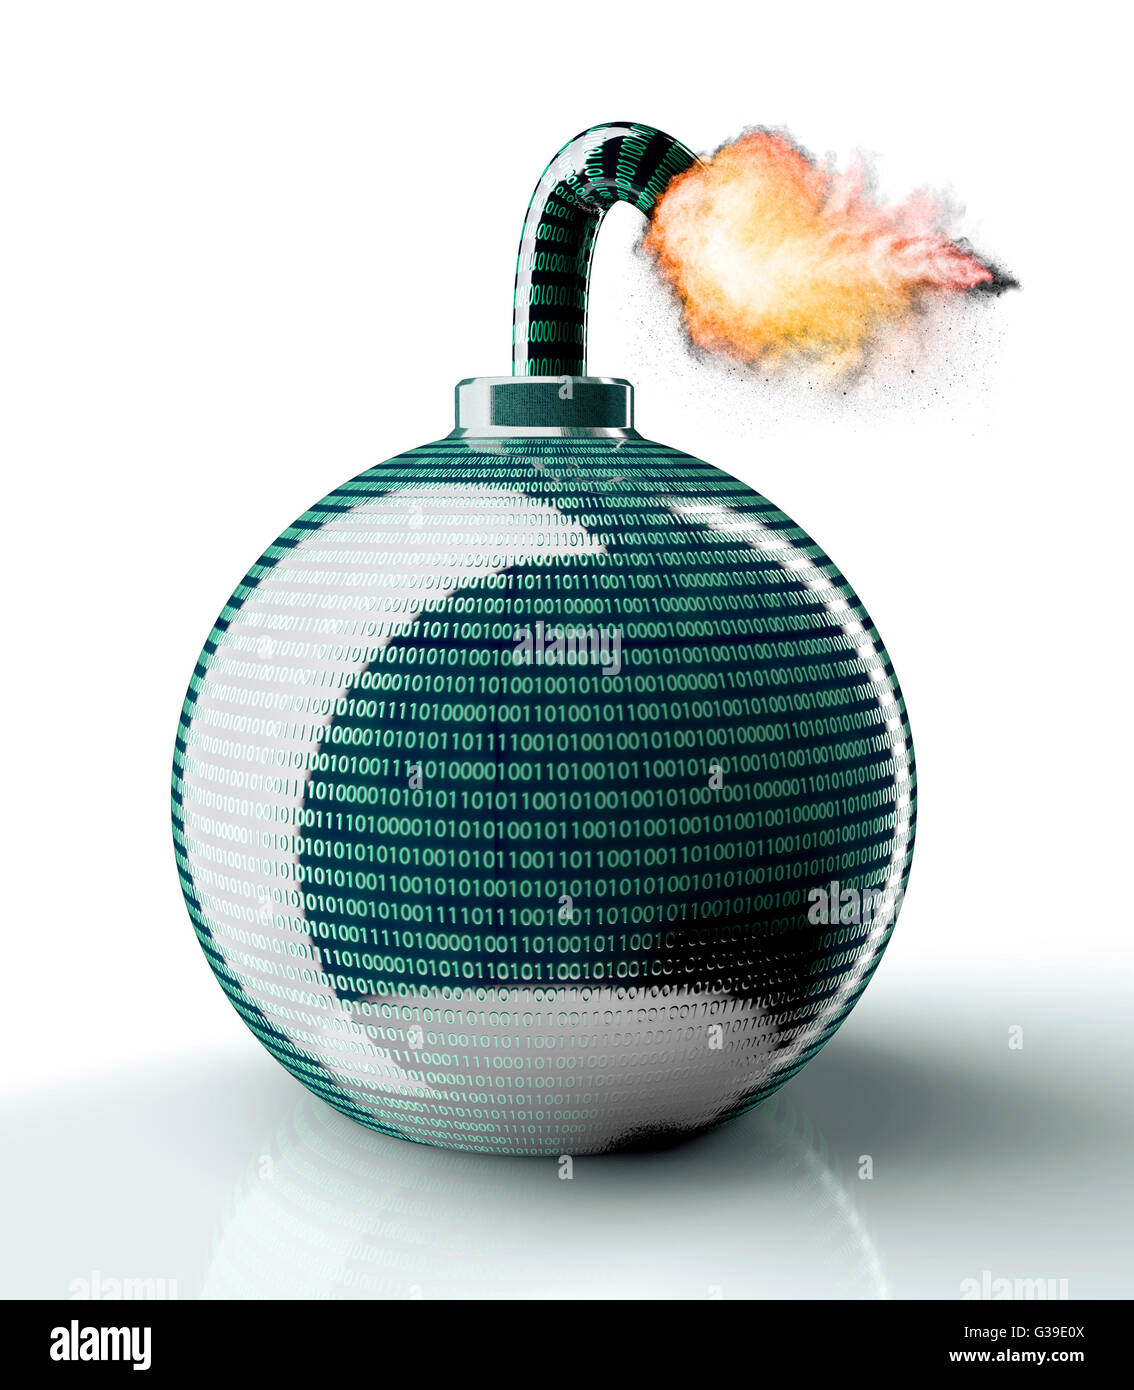 Concept de sécurité numérique bombe ordinateur isolé sur blanc, 3d illustration Banque D'Images